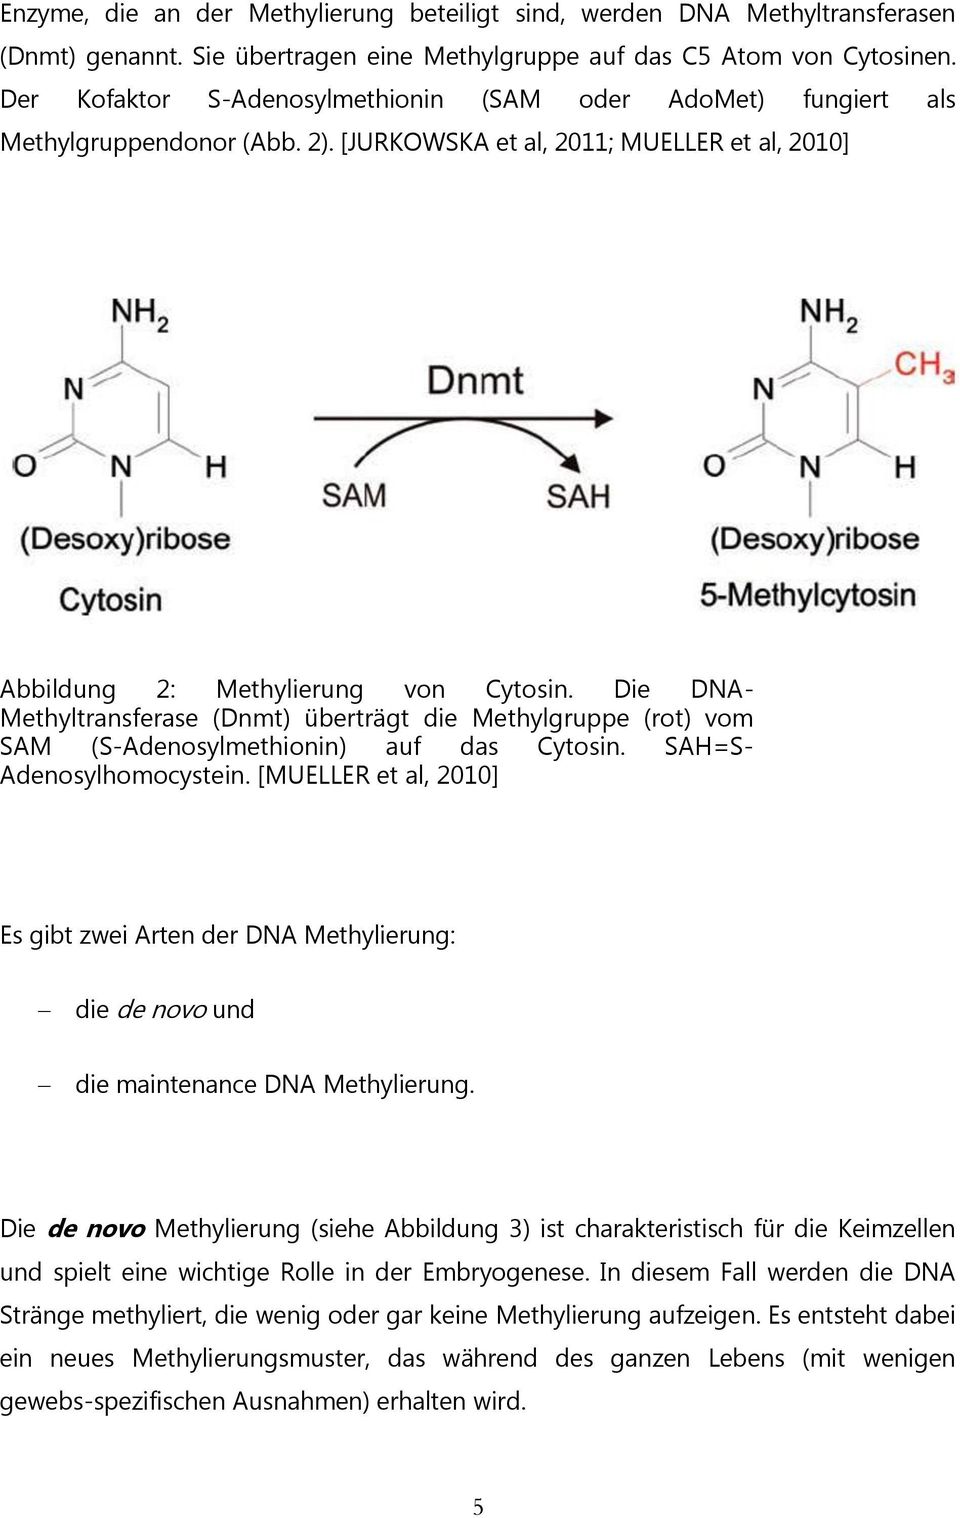 Die DNA- Methyltransferase (Dnmt) überträgt die Methylgruppe (rot) vom SAM (S-Adenosylmethionin) auf das Cytosin. SAH=S- Adenosylhomocystein.